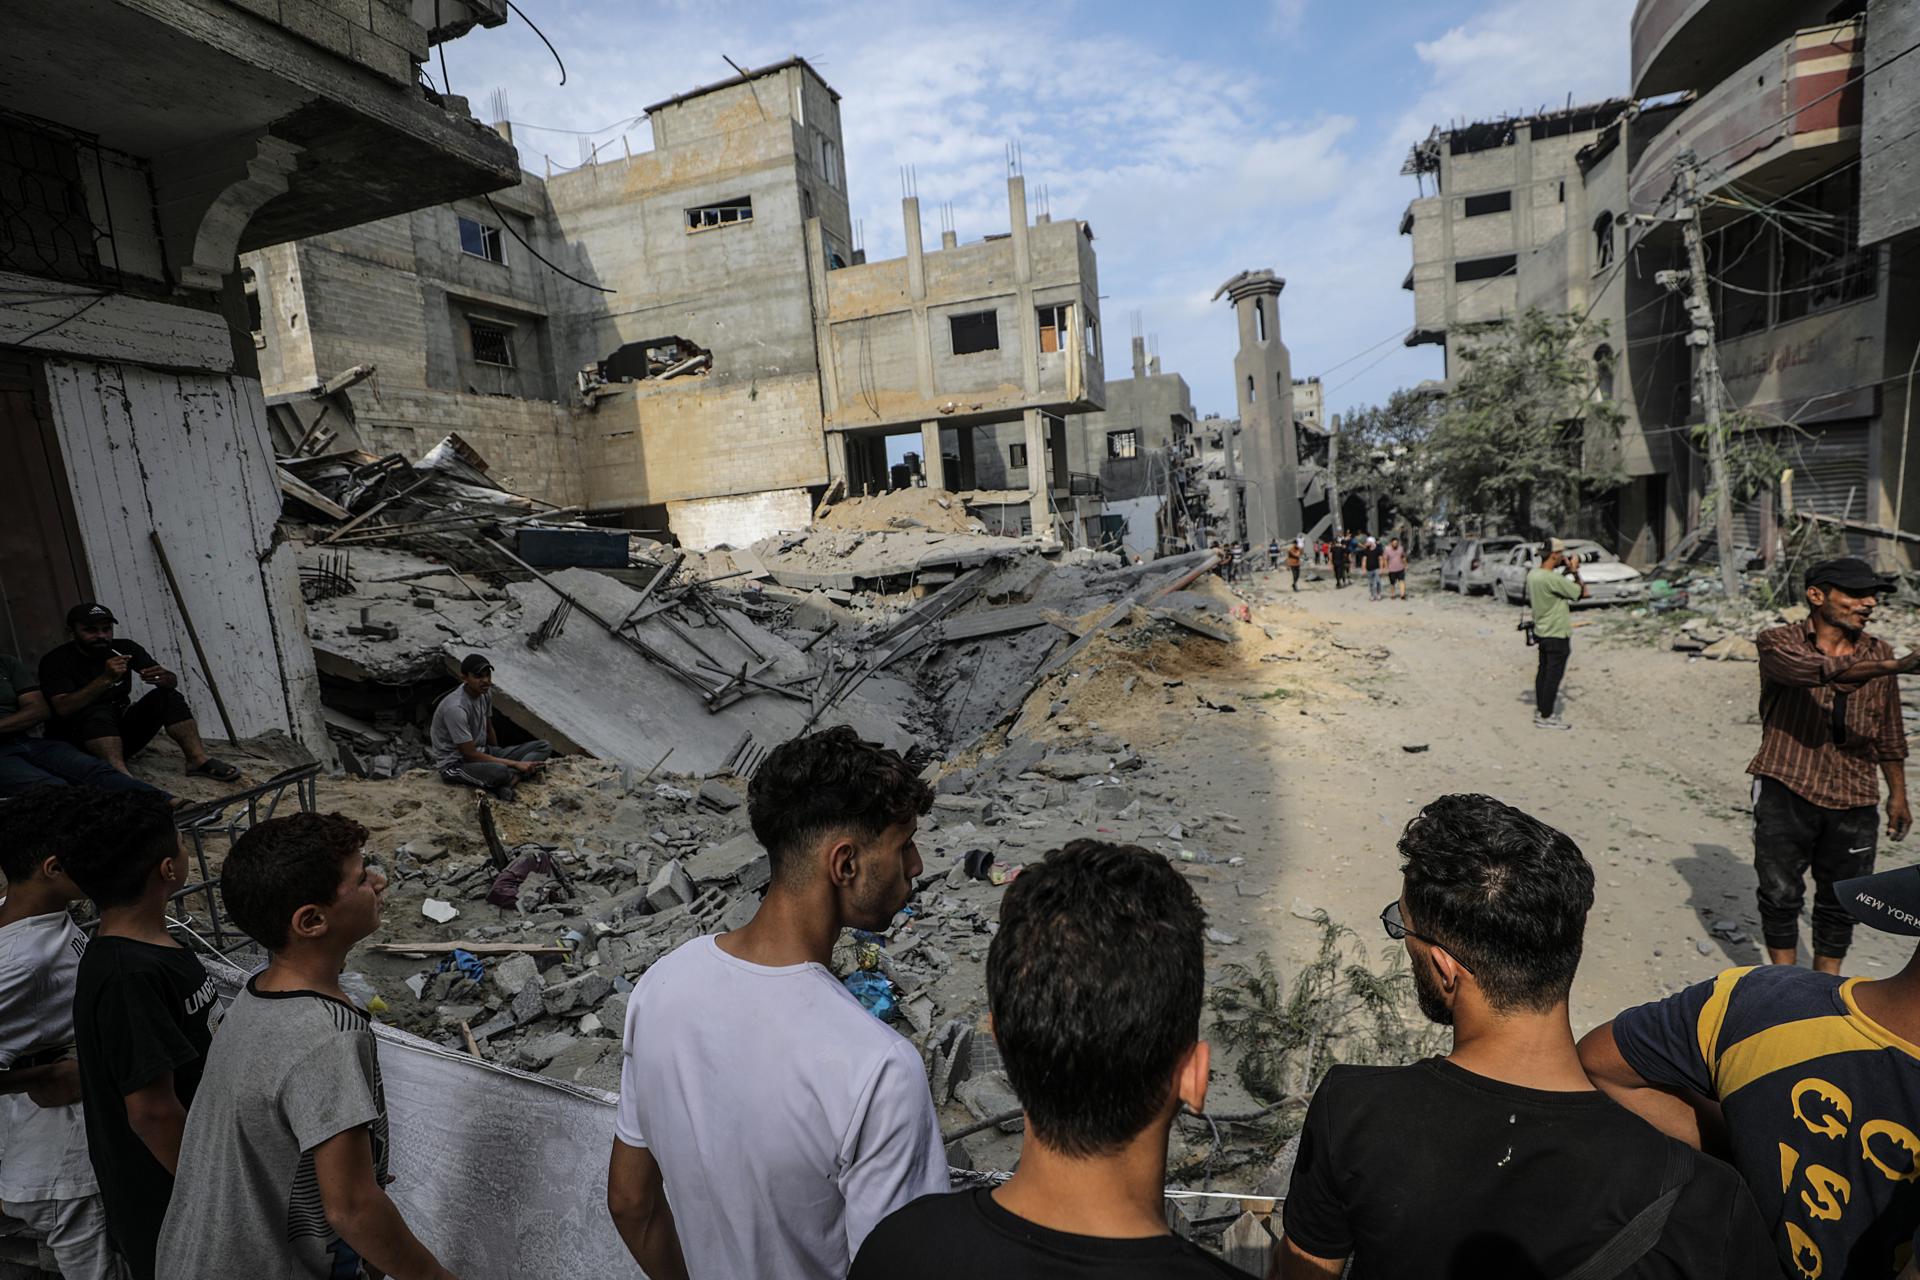 Francia y Alemania también decidieron congelar los fondos para la agencia de la ONU en Gaza por sus nexos con Hamas